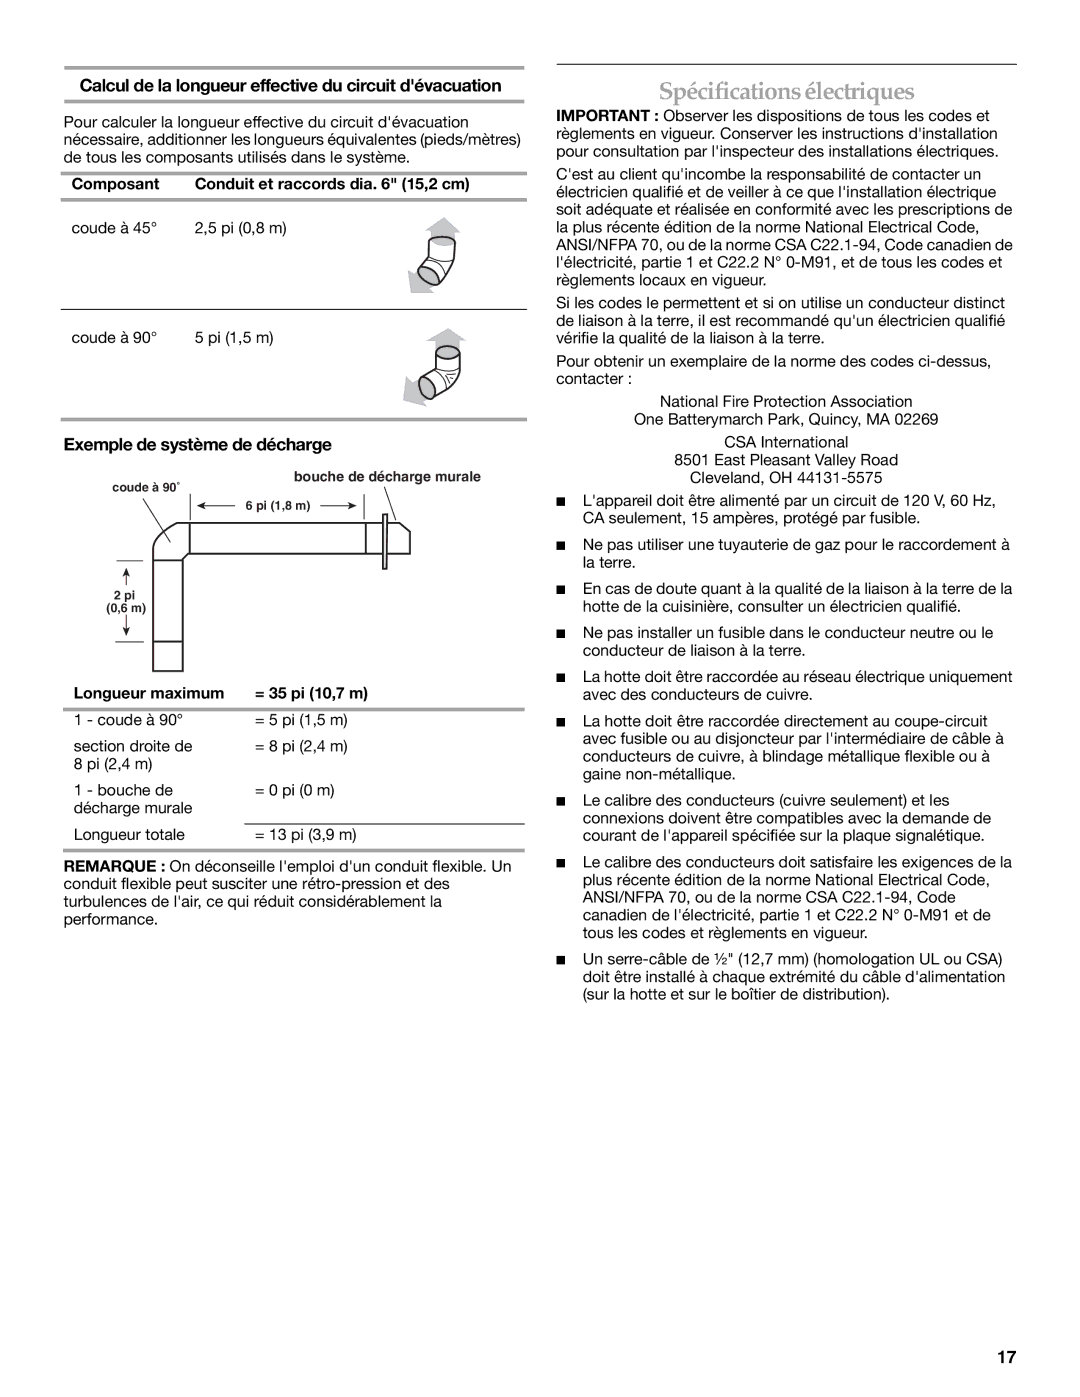 KitchenAid RangeHood Spécifications électriques, Calcul de la longueur effective du circuit dévacuation 